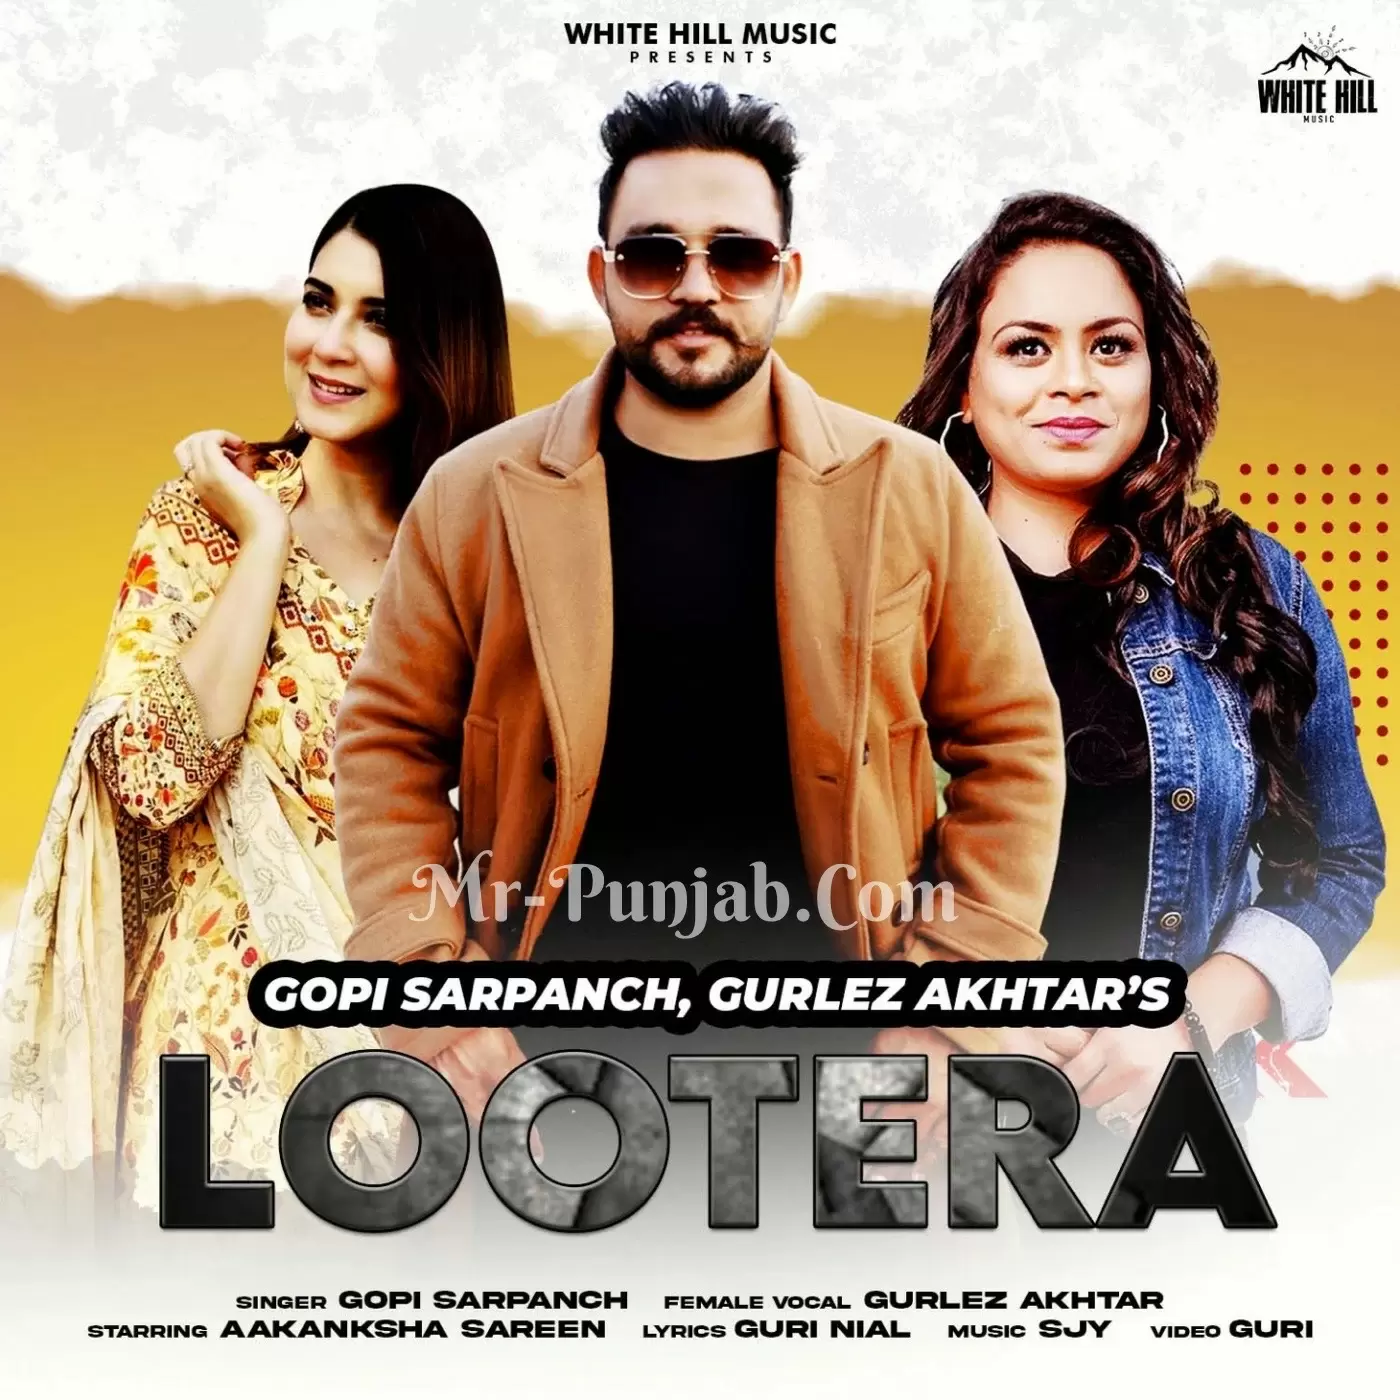 Lootera Gopi Sarpanch Mp3 Download Song - Mr-Punjab